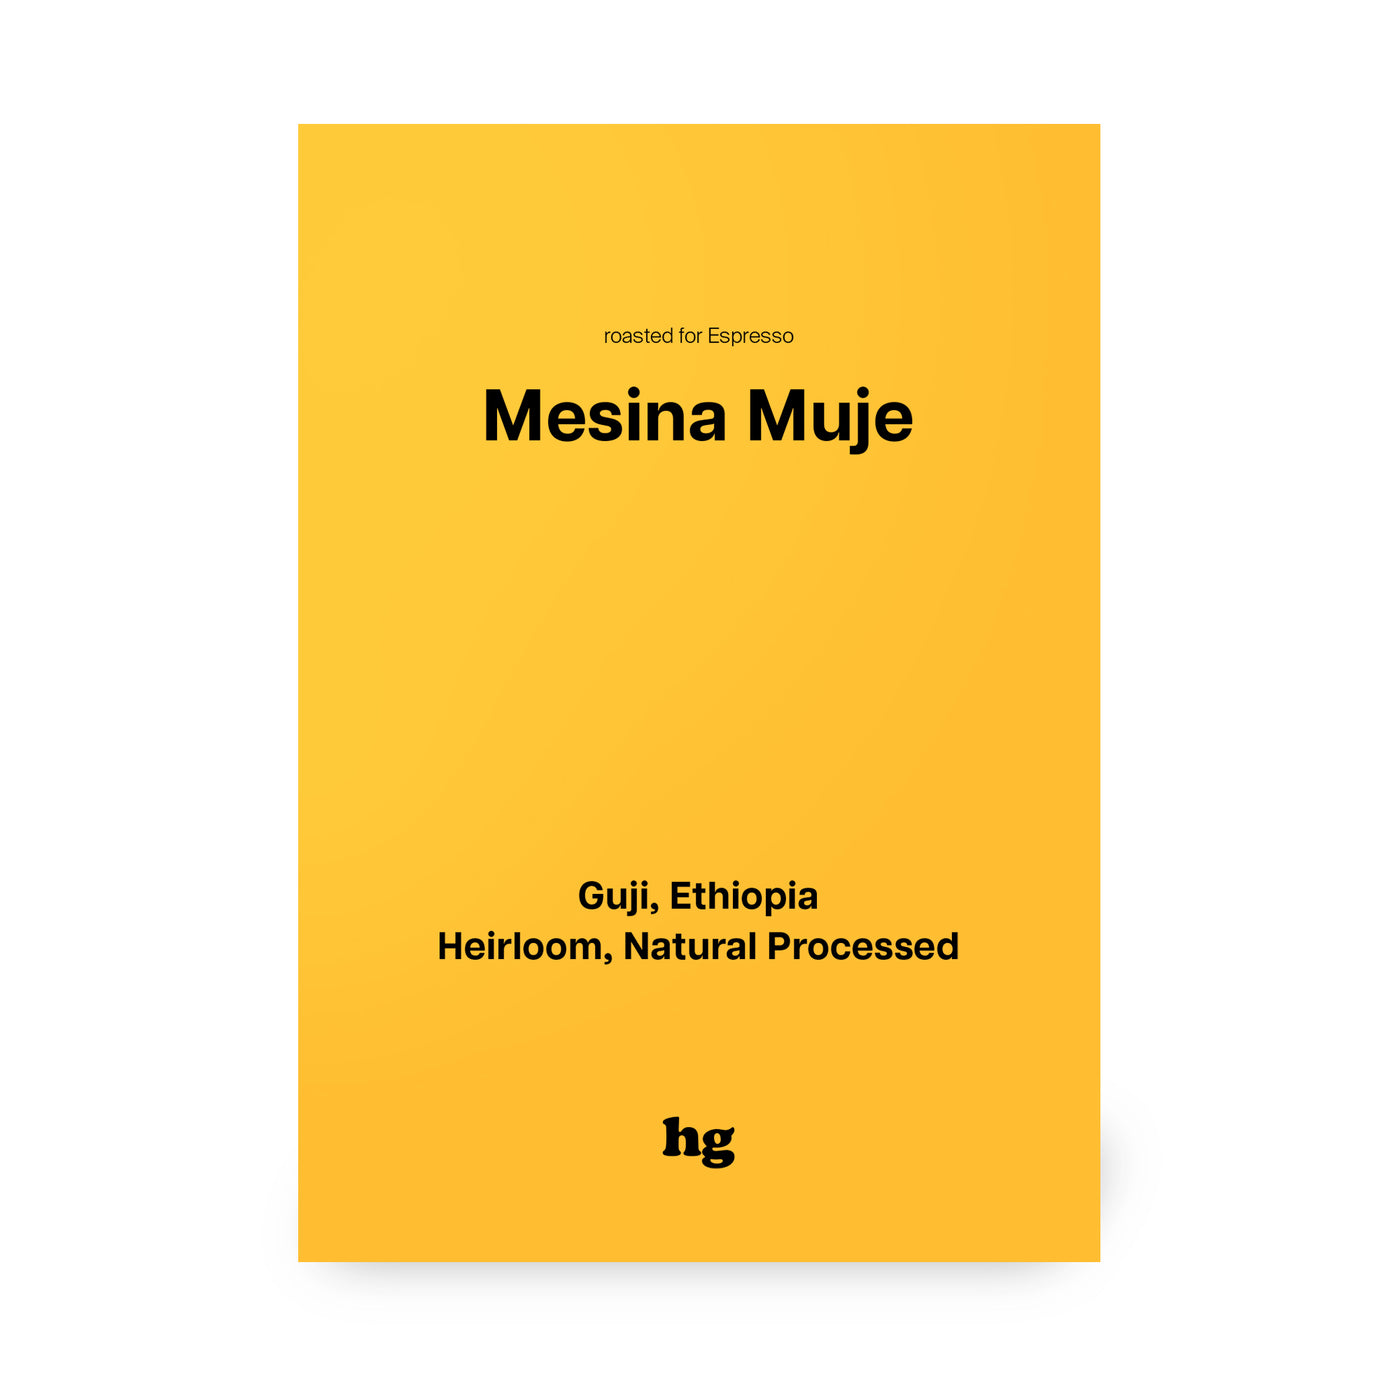 Mesina Muje, Guji, Ethiopia